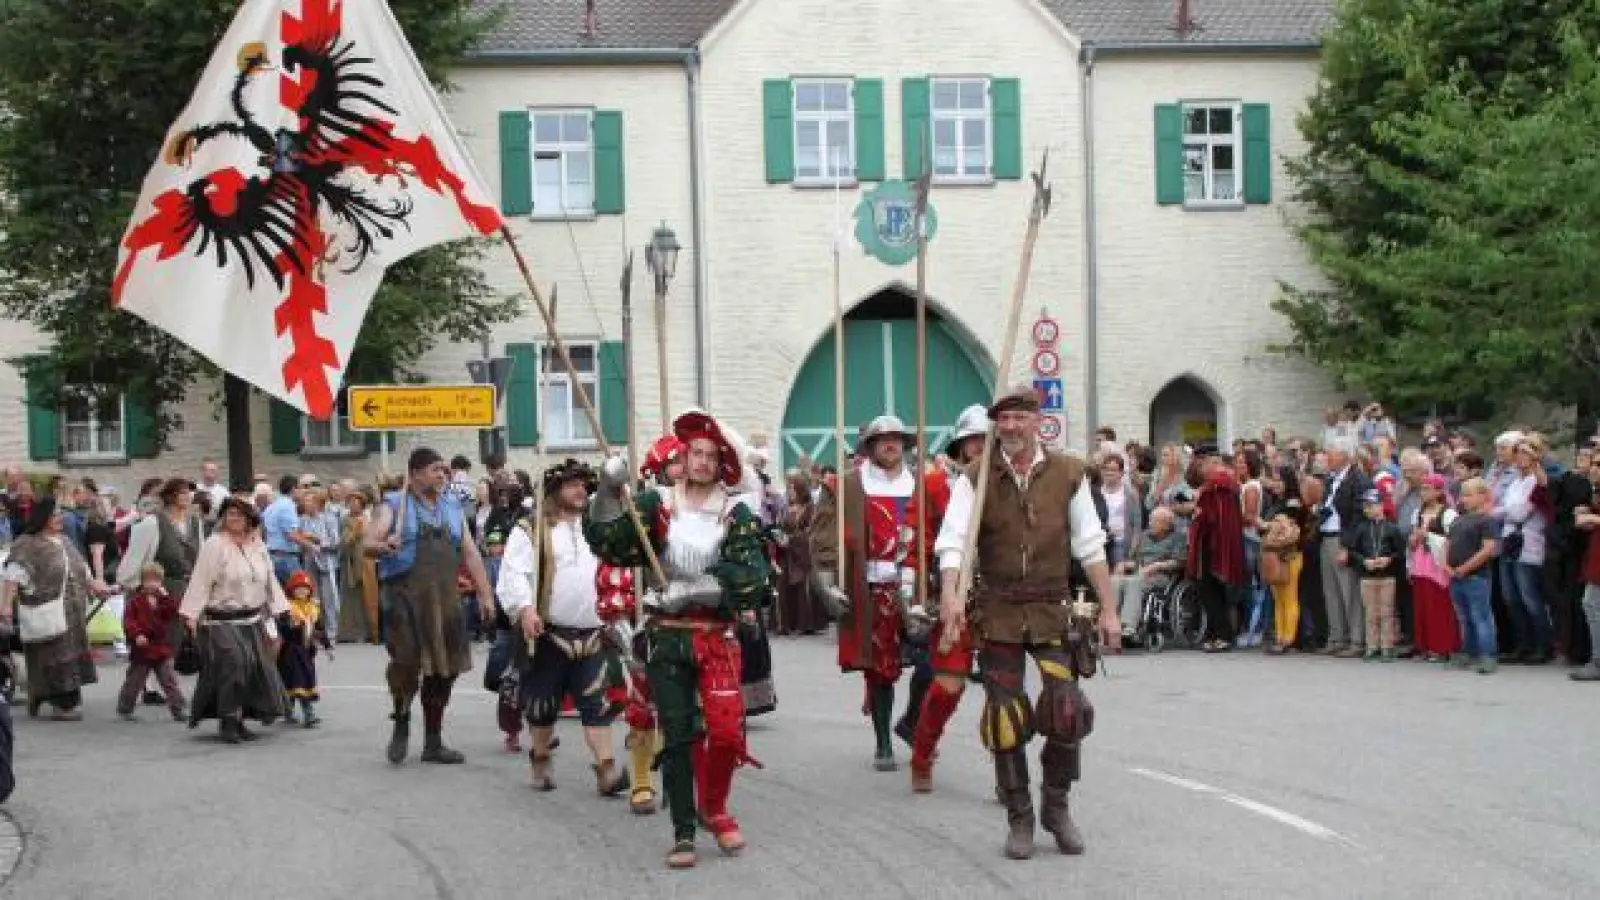 Landsknechte, Ritter, Gaukler, Tänzer und mittelalterliches Volk ziehen an diesem Sonntag, 3. Juli, durch Pöttmes. Die Gemeinde feiert am Wochenende ihr Historisches Marktfest. Das letzte fand 2017 statt.